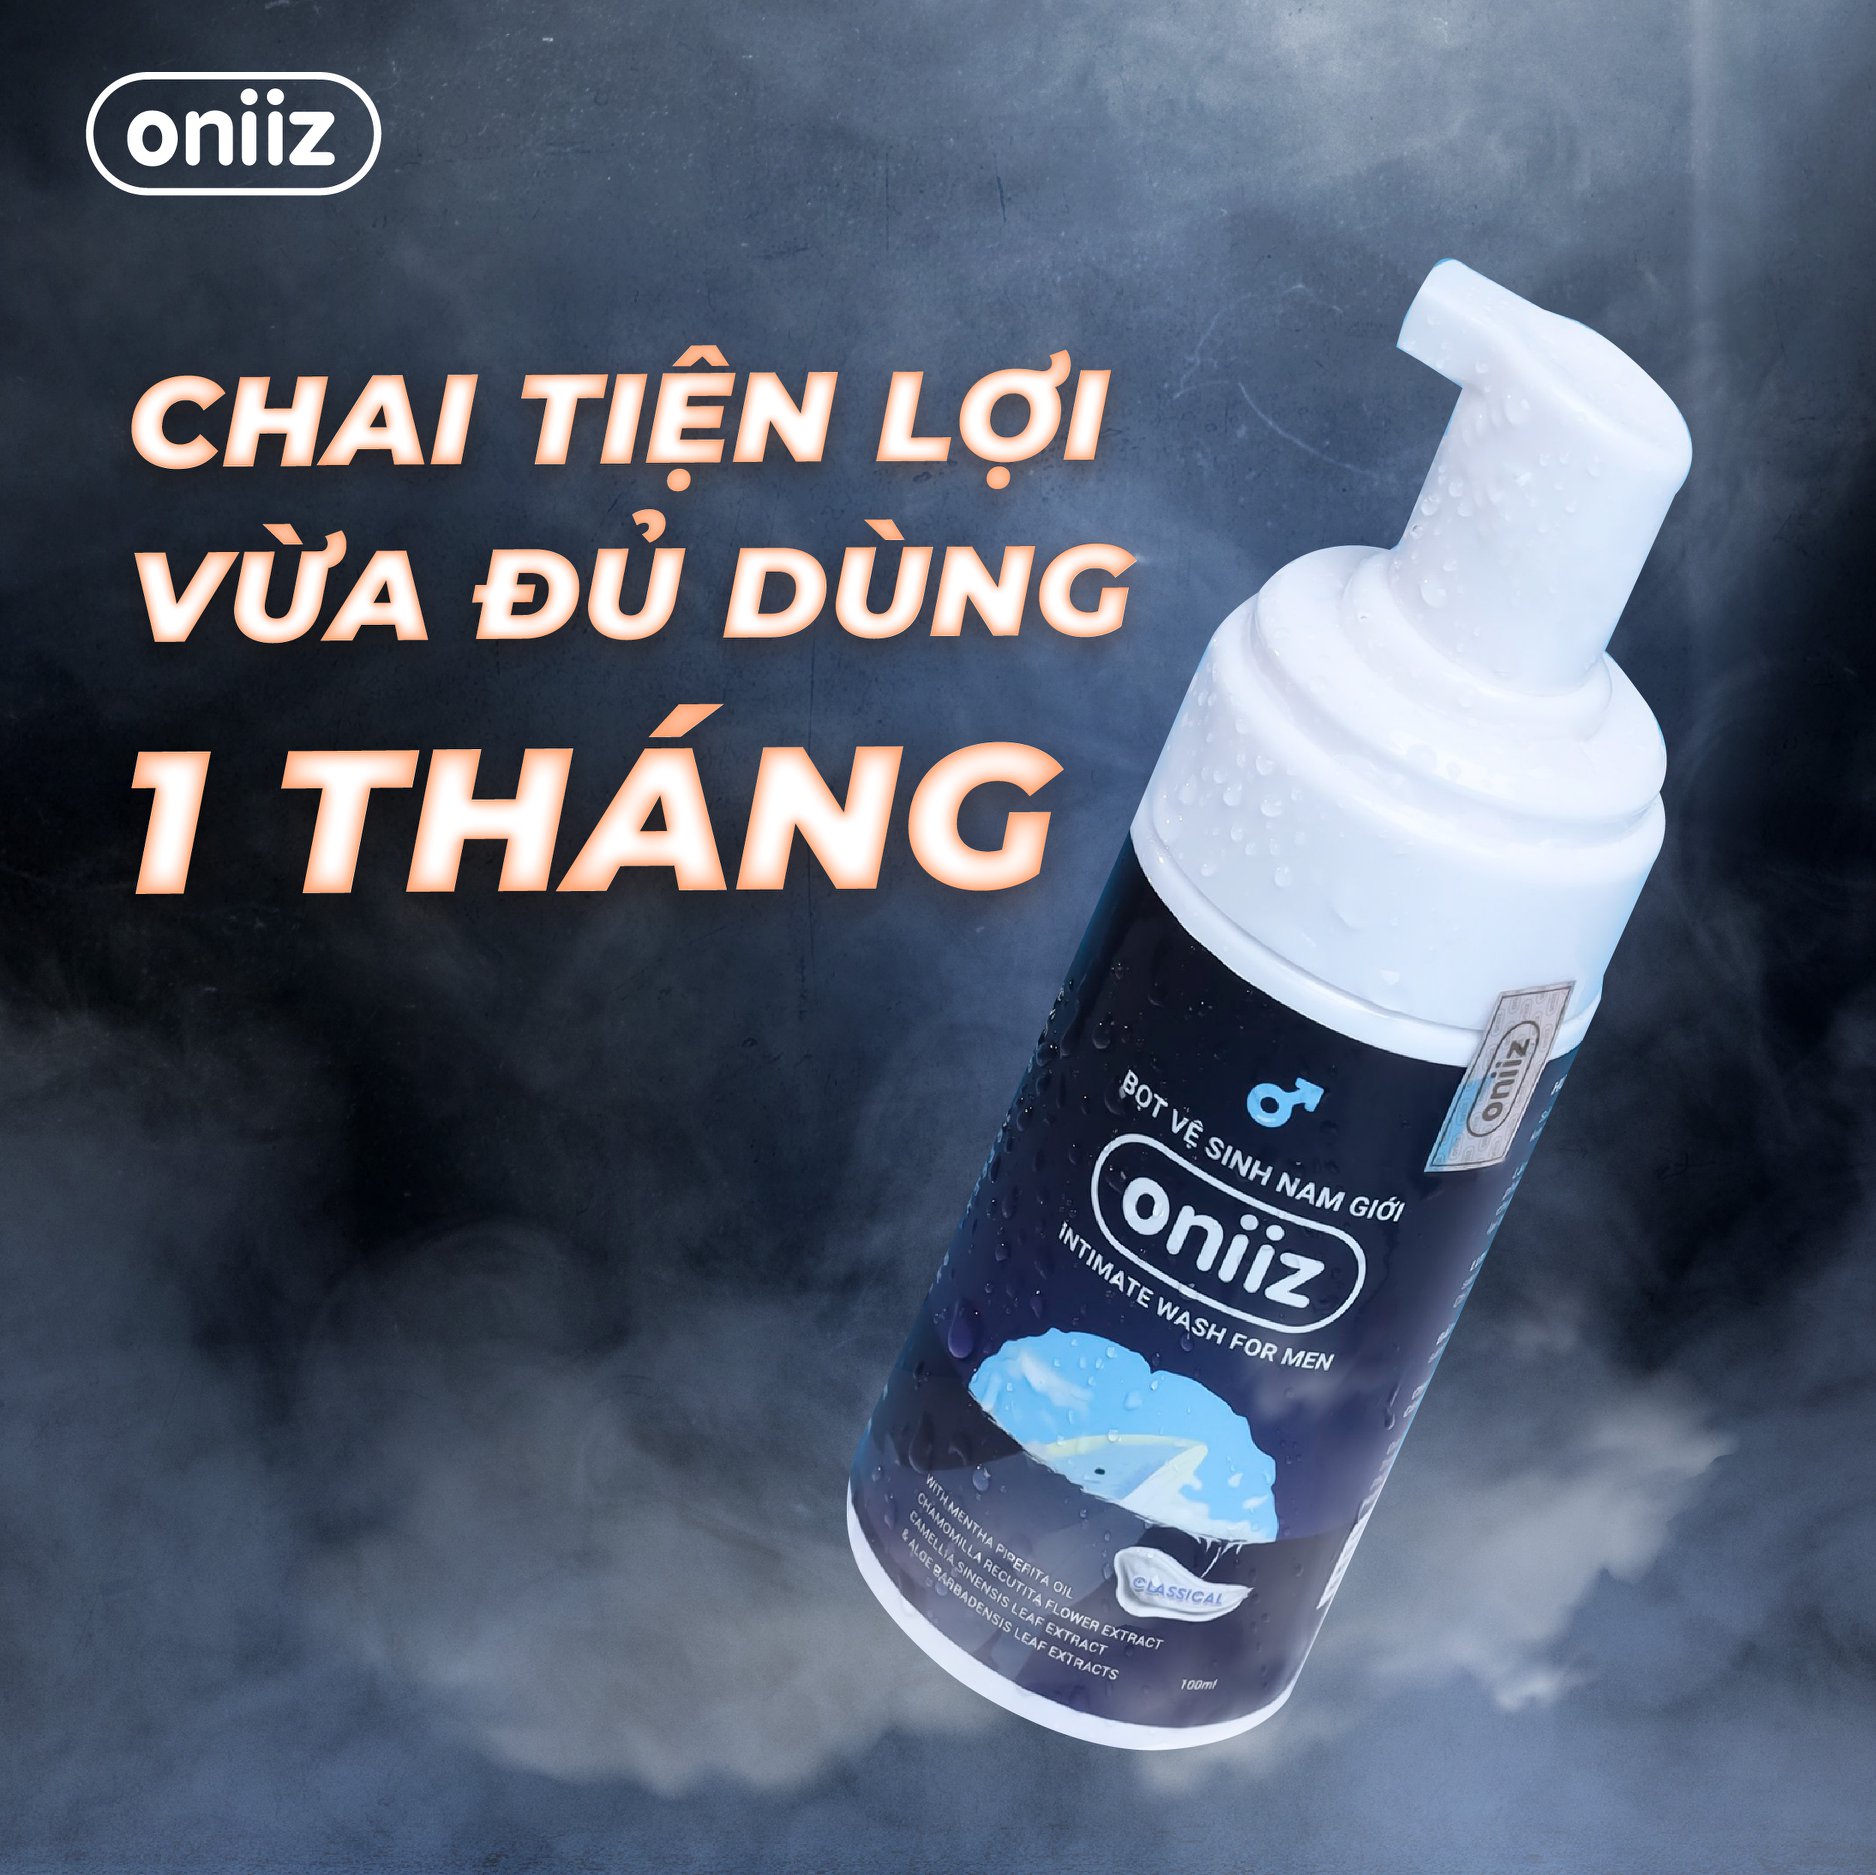 Bọt vệ sinh nam giới Oniiz - Dung dịch vệ sinh nam tạo bọt 100ml